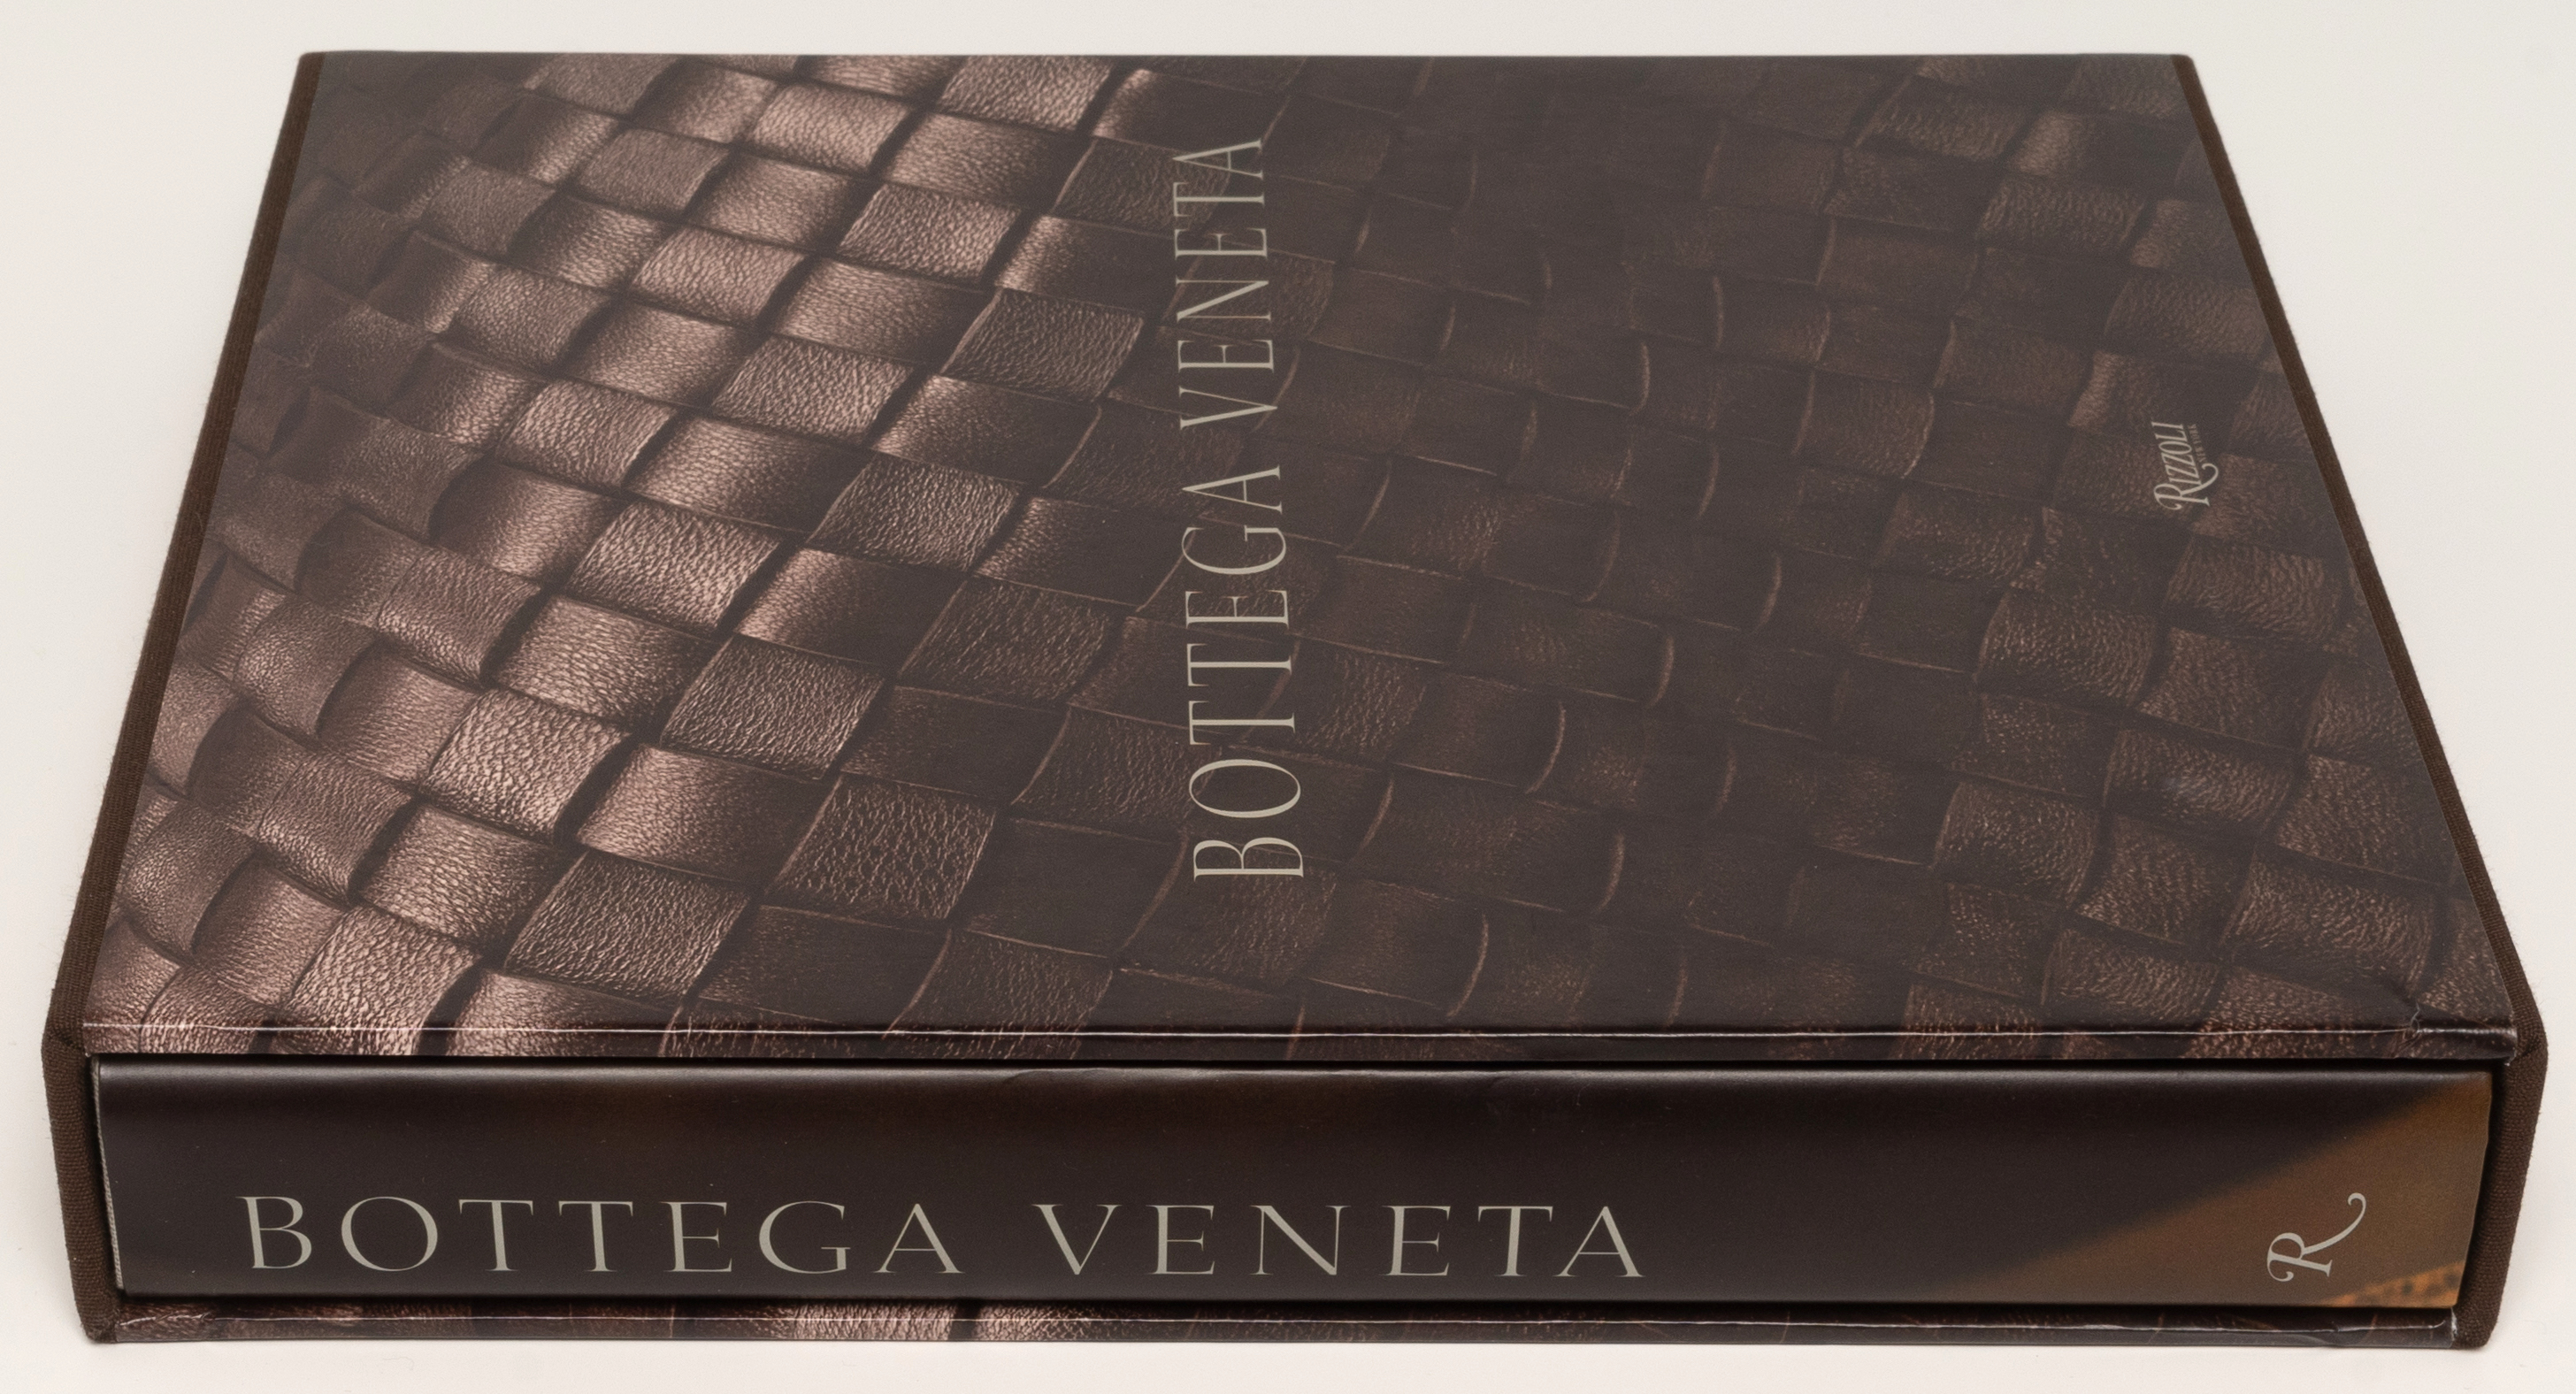 Bottega Veneta publishes its first book